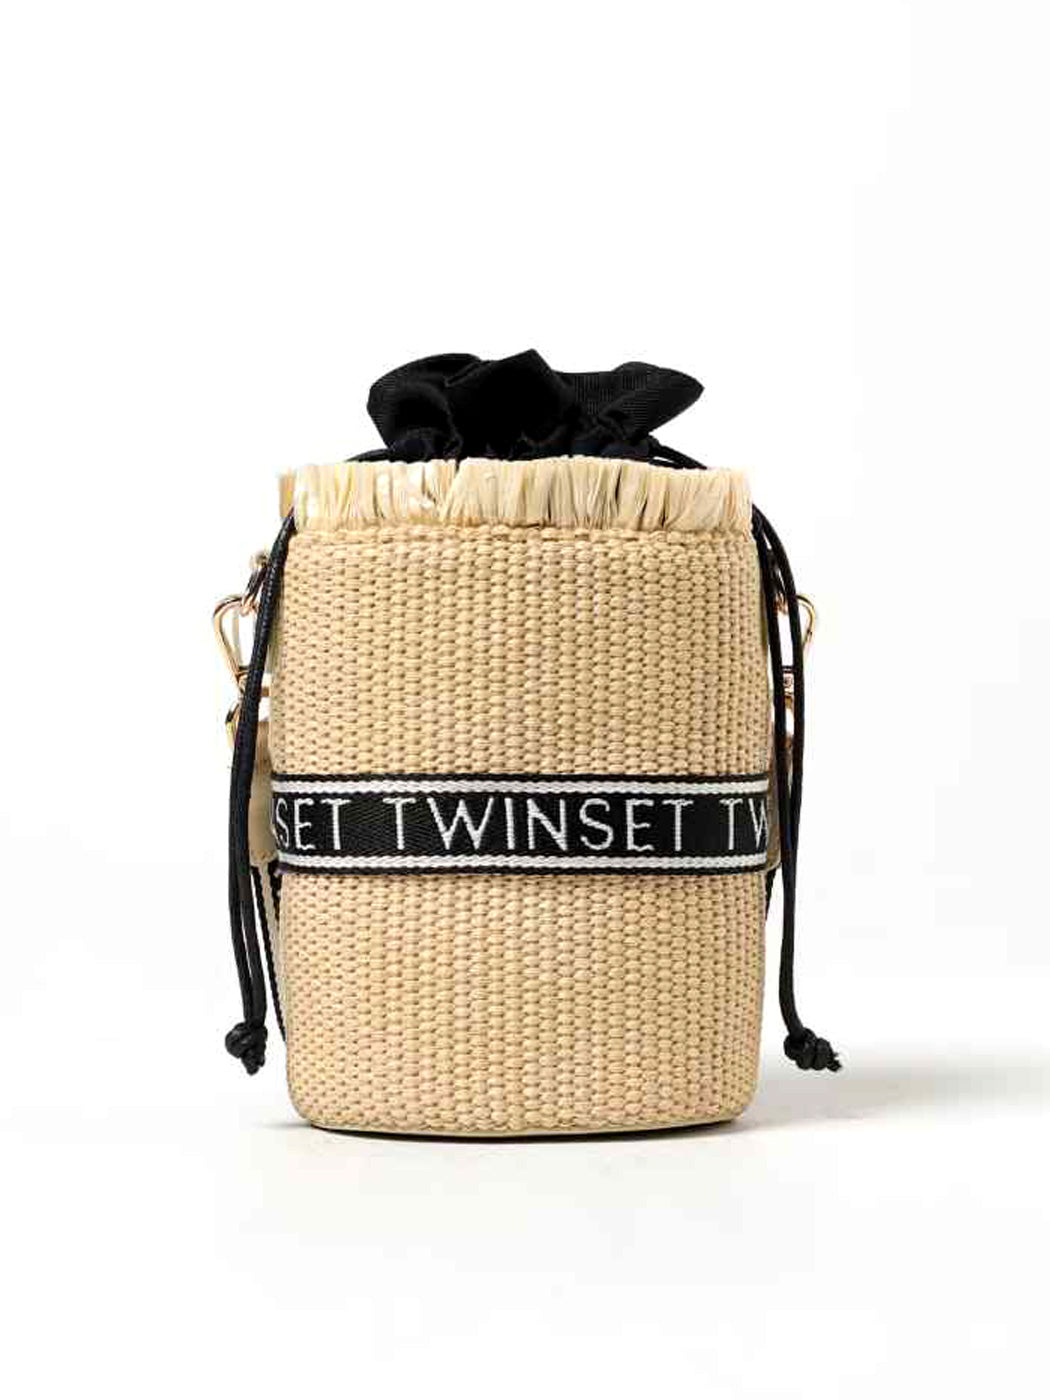 Twinset Straw τσάντα για κορίτσι-241GJ8011